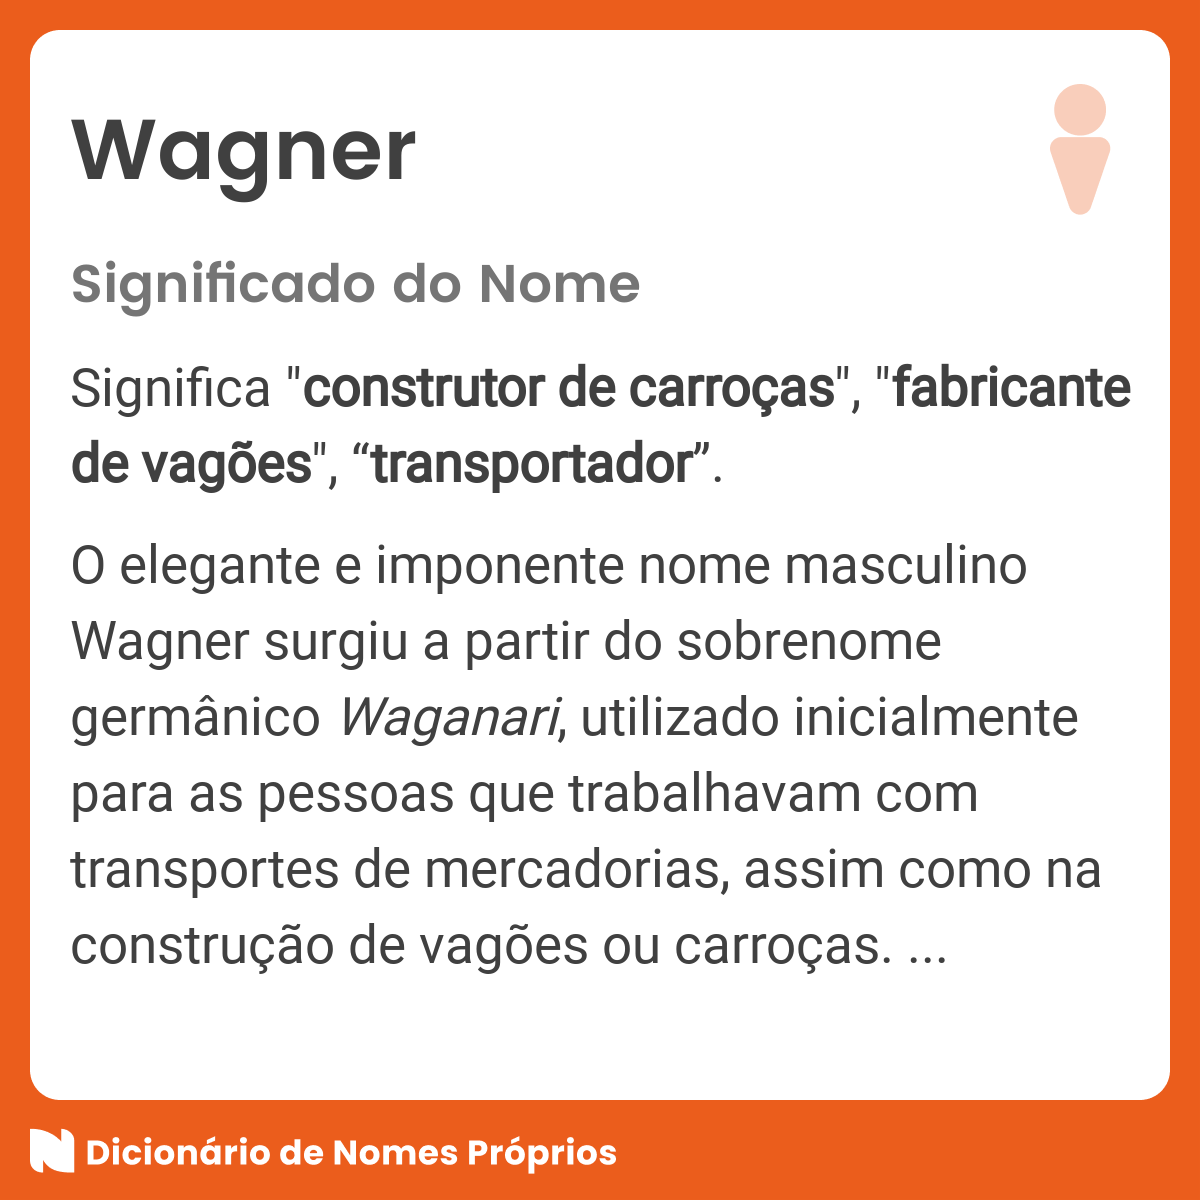 Quantas pessoas existem no mundo com o nome Wagner?